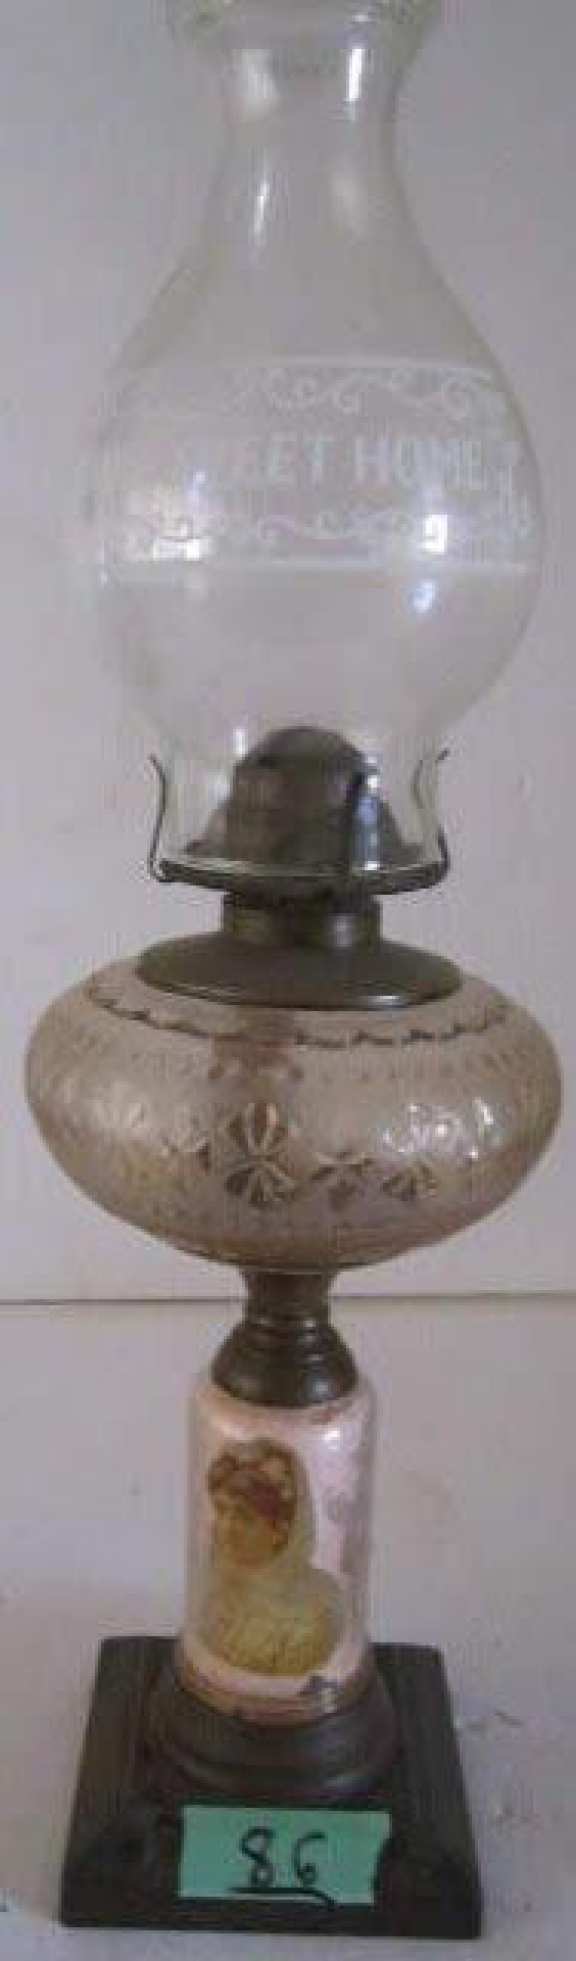 Coal oil lamp